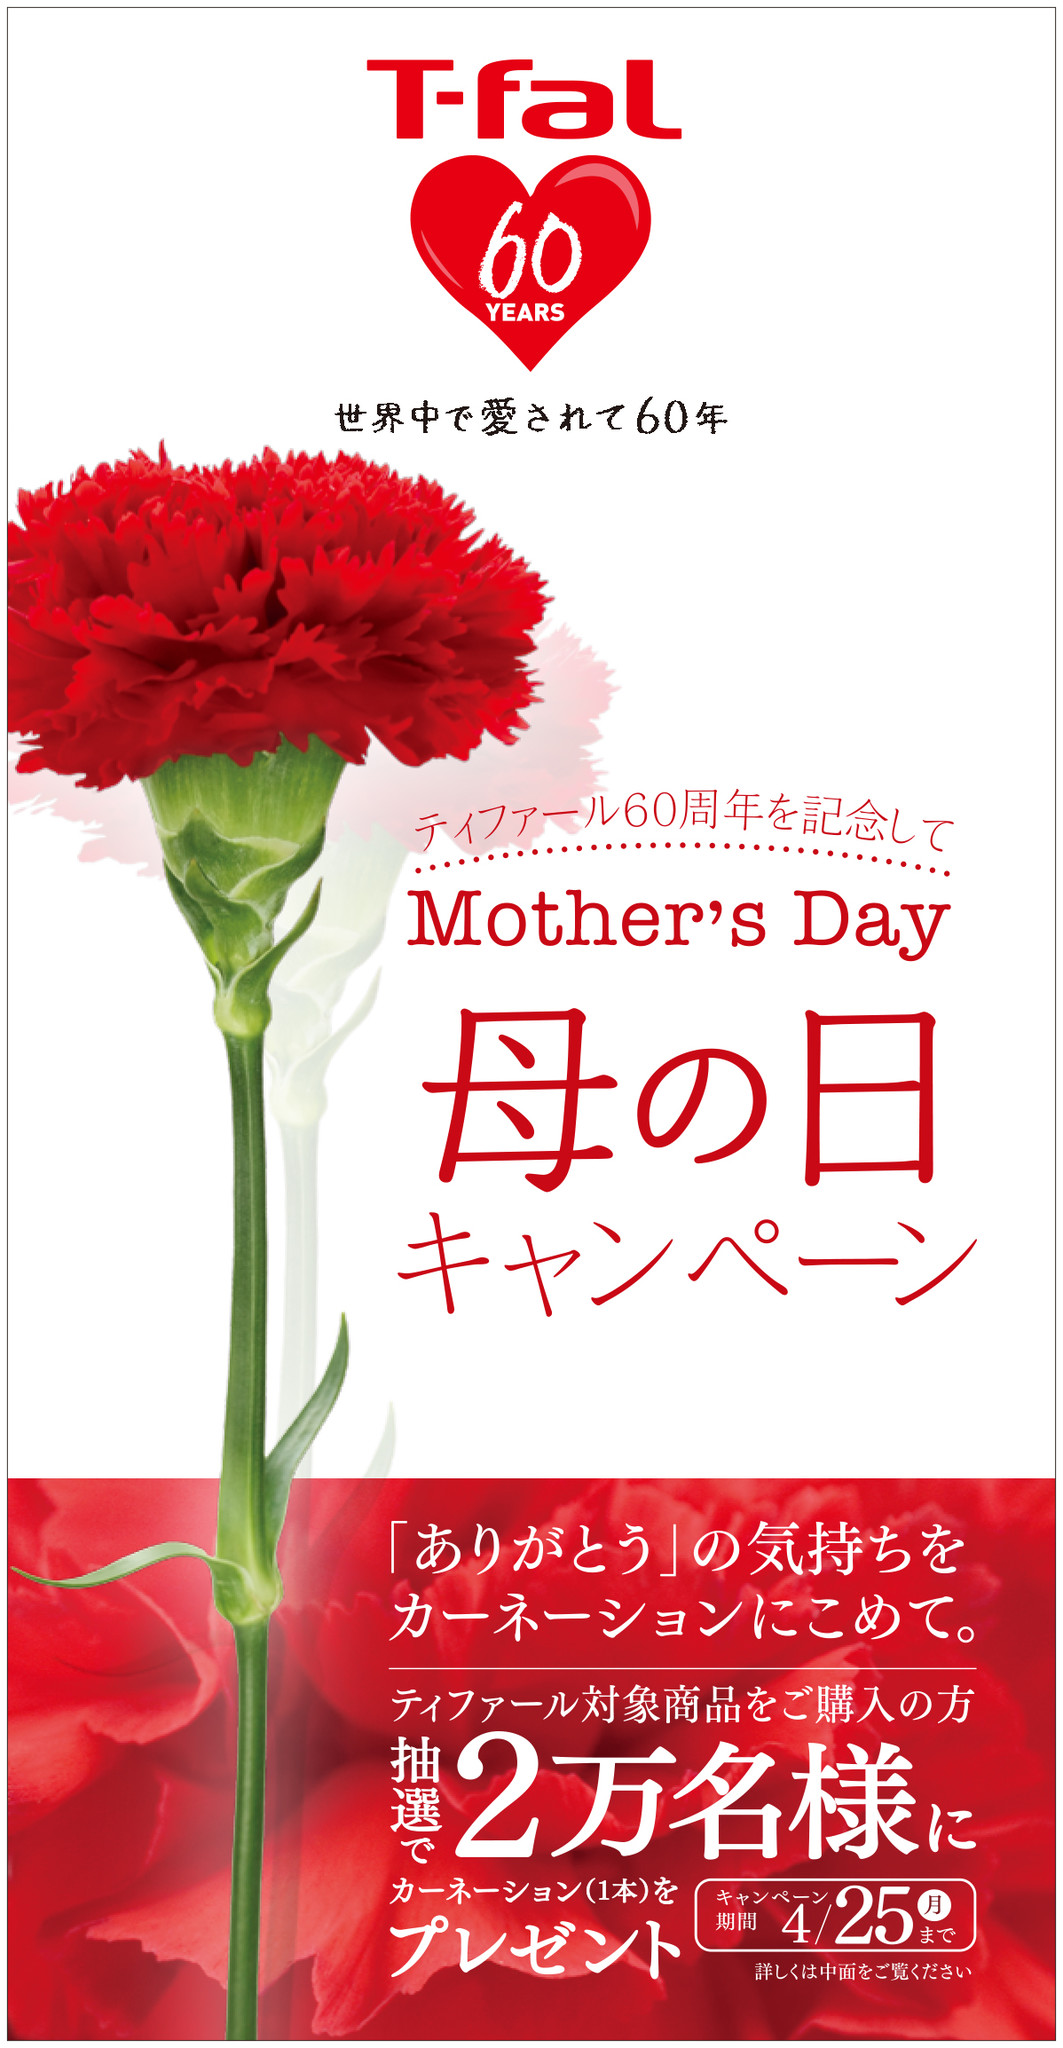 ティファール60周年記念 母の日キャンペーン を実施 2万名のお母様へカーネーションをプレゼント 株式会社グループセブジャパンのプレスリリース